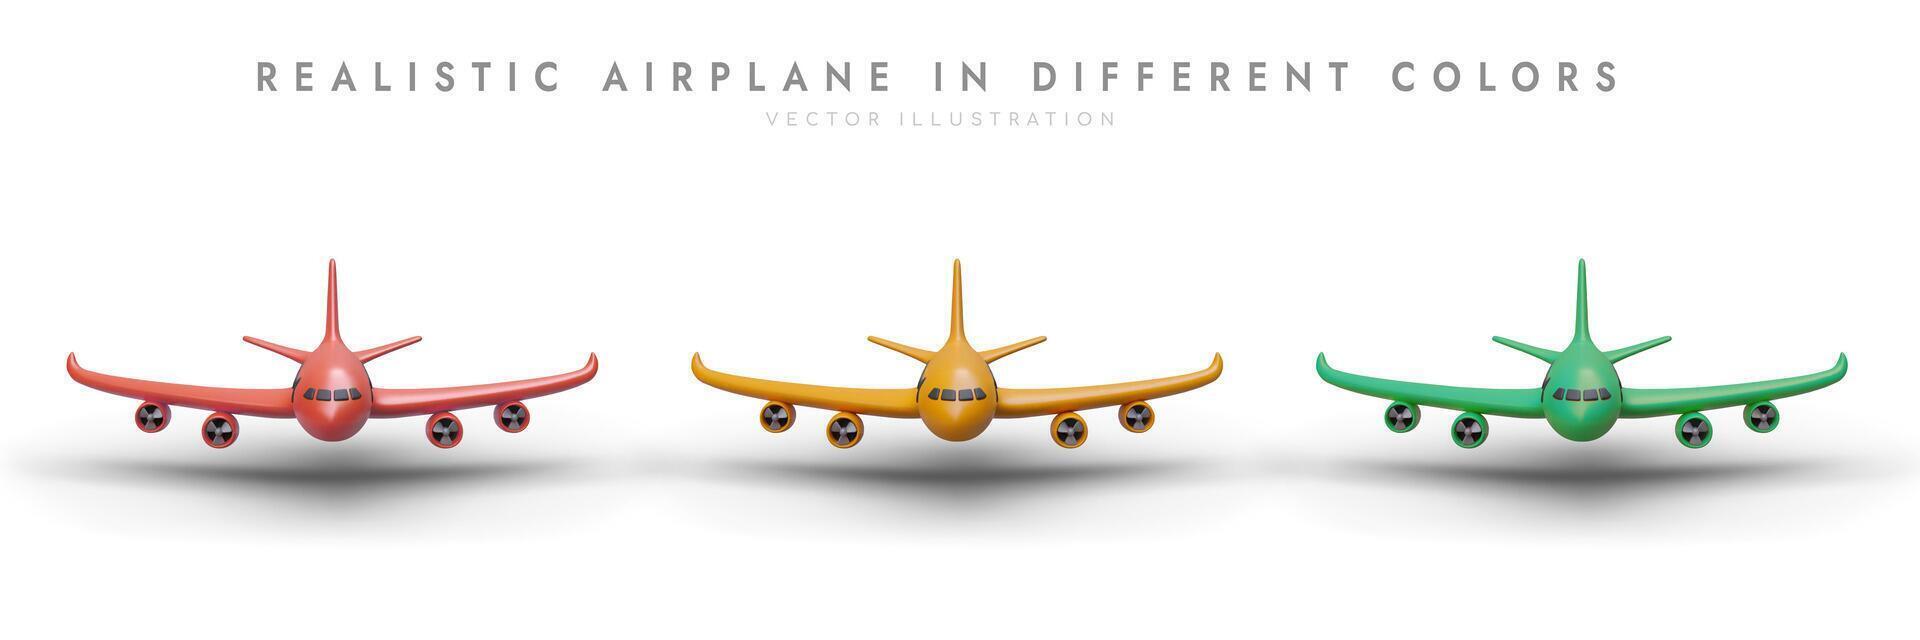 reeks van 3d vliegtuigen van verschillend kleuren, voorkant visie. realistisch beeld met schaduw vector